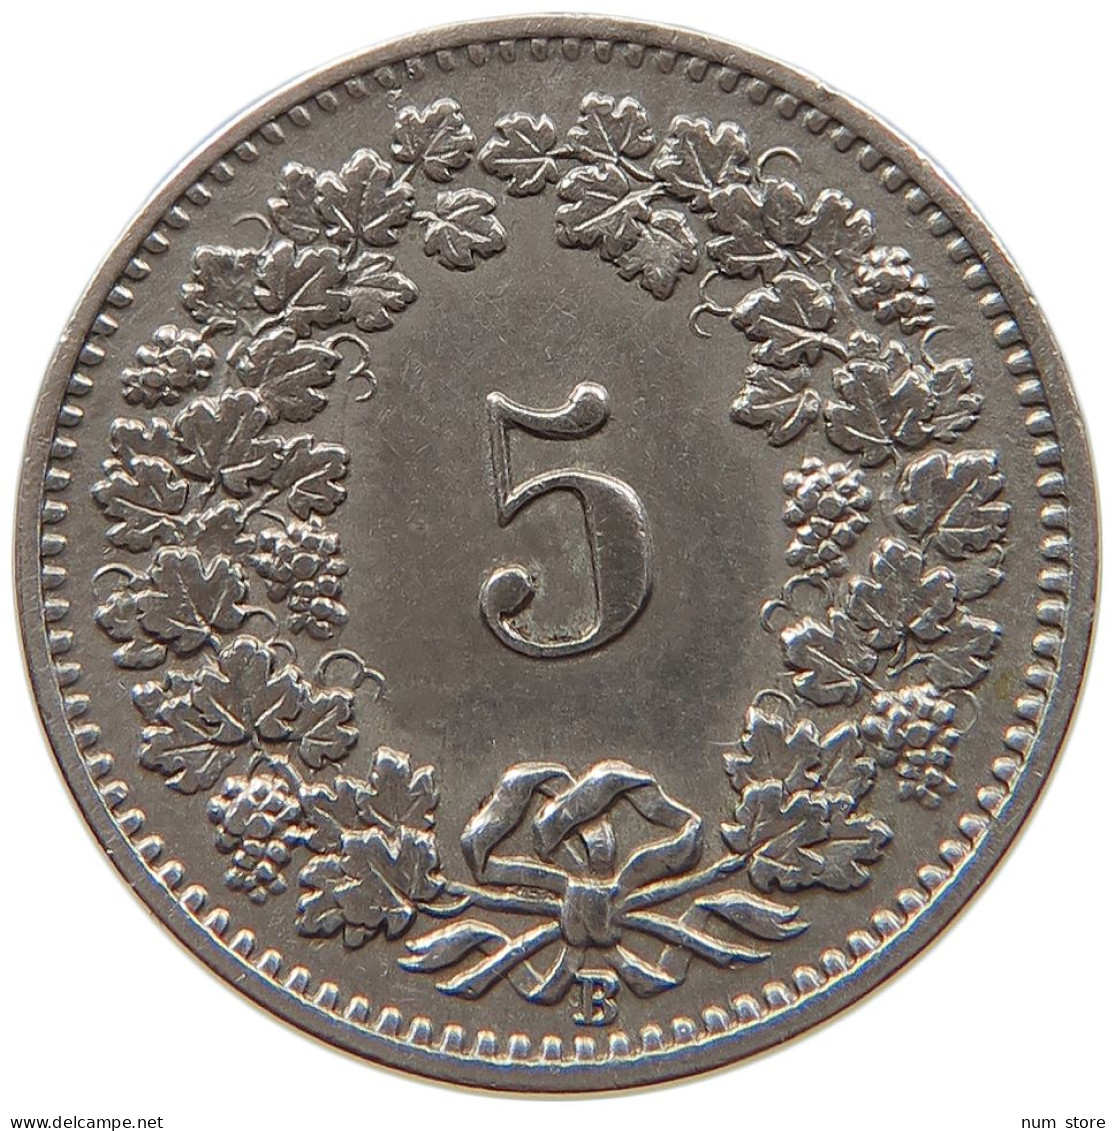 SWITZERLAND 5 RAPPEN 1898 #t031 0147 - 5 Centimes / Rappen